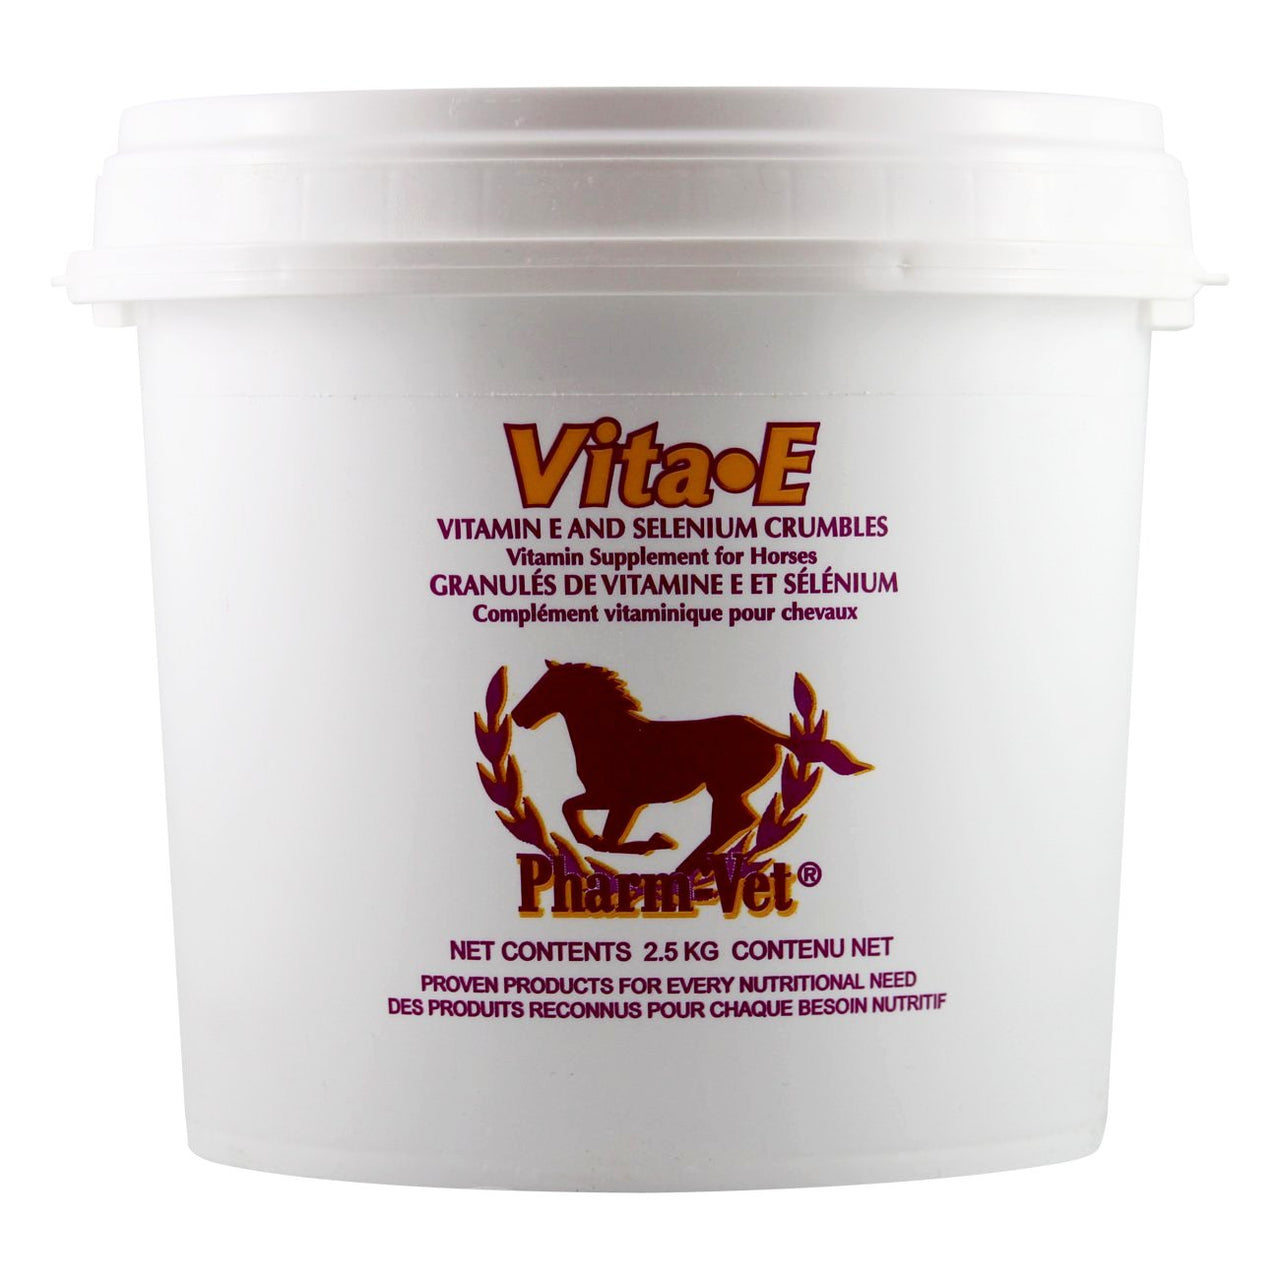 Pharm Vet Vita E And Selenium Crumbles 2.5Kg - Equine Supplements Pharm Vet - Canada